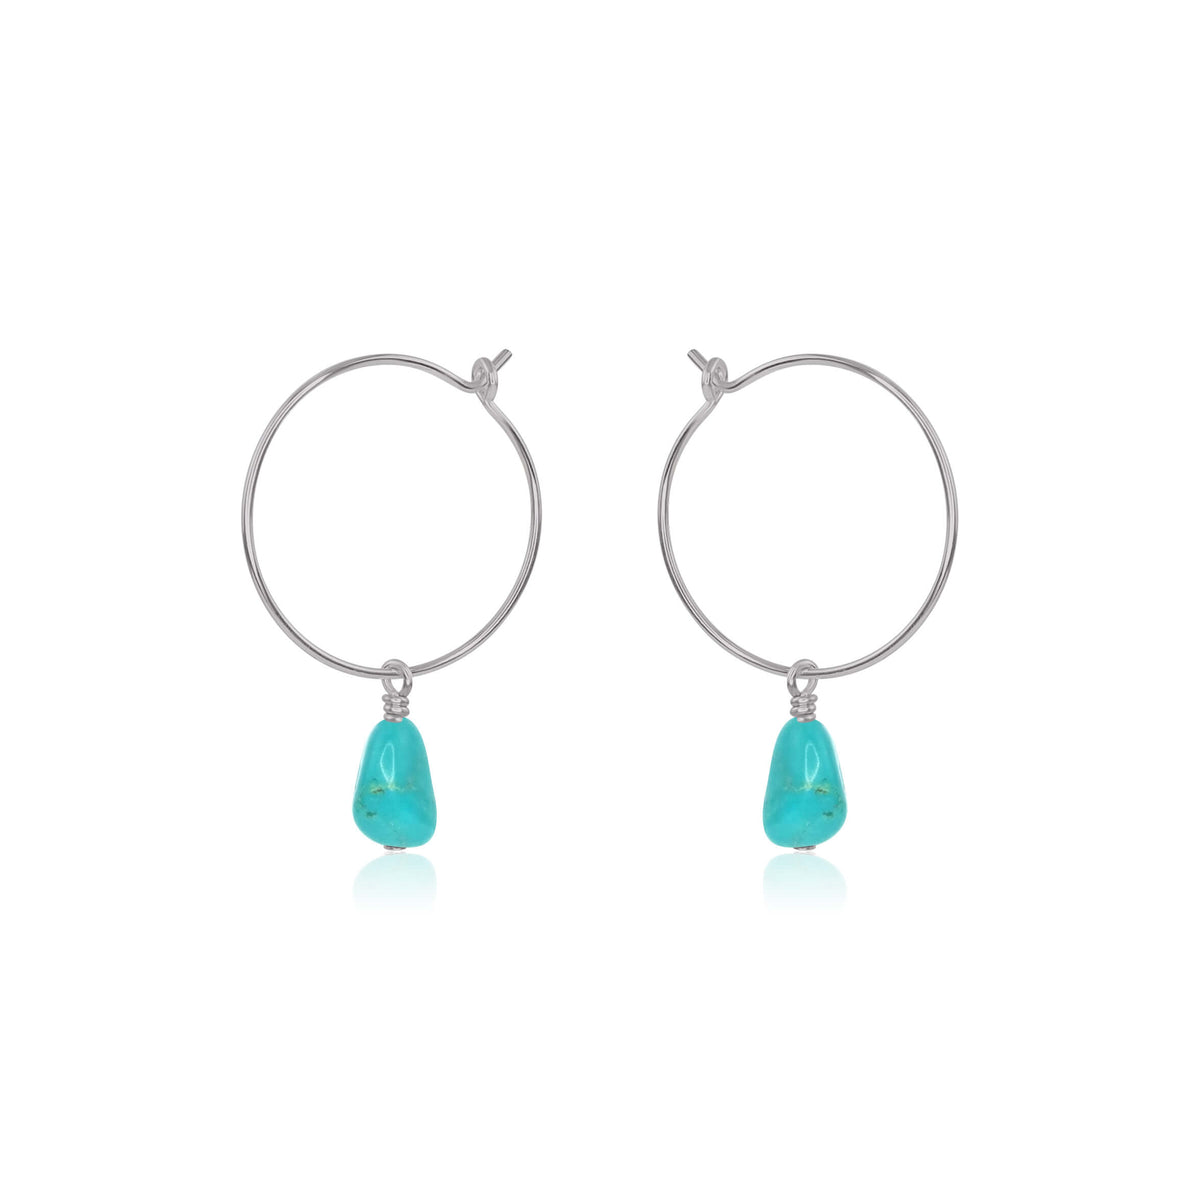 Raw Nugget Hoop Earrings - Turquoise - Stainless Steel - Luna Tide Handmade Jewellery